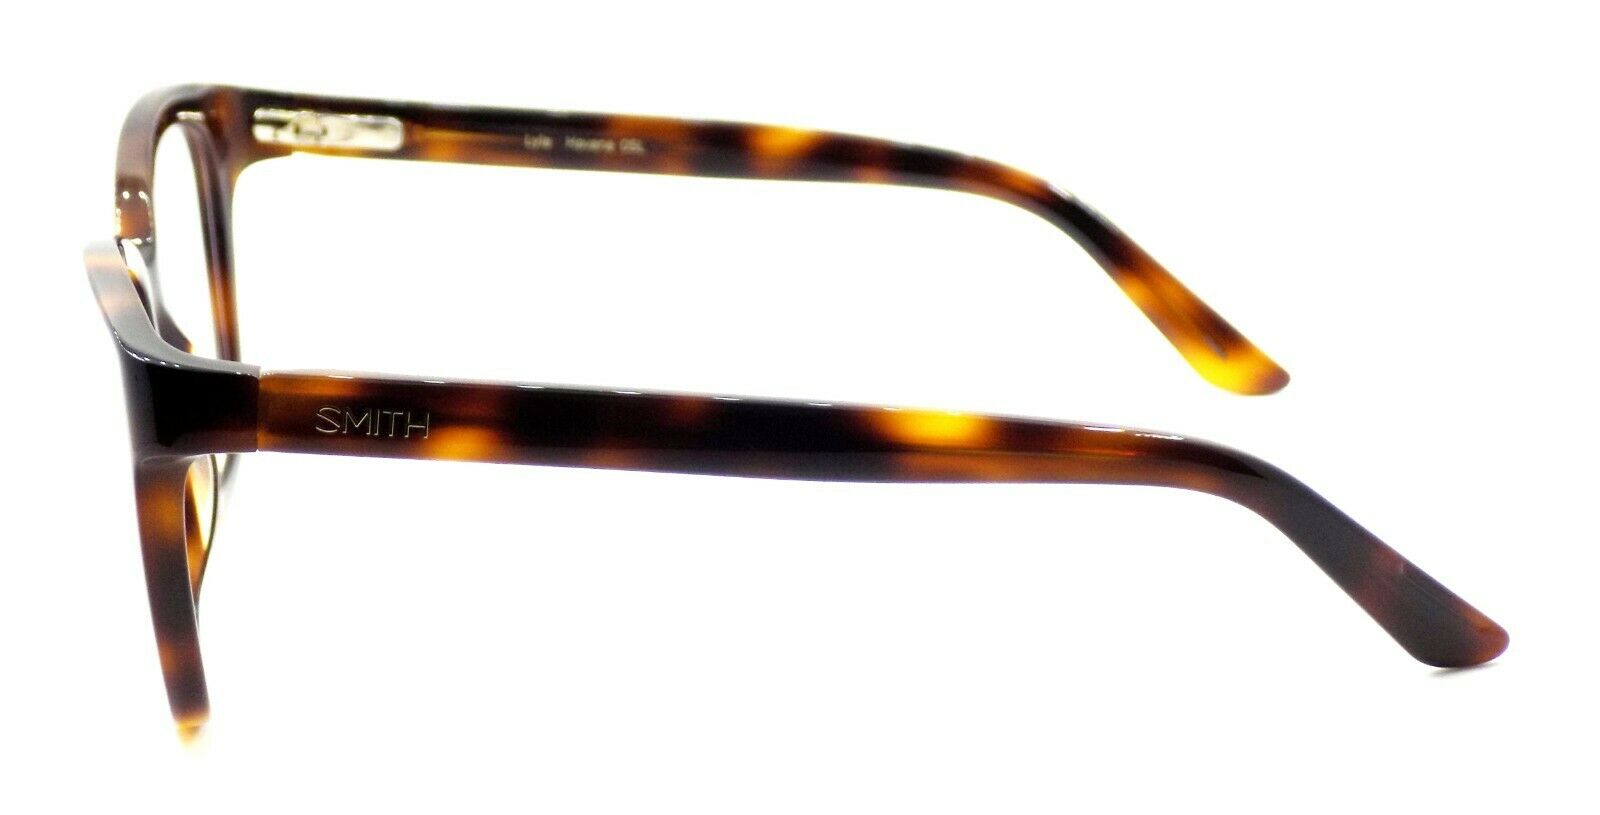 3-SMITH Optics Lyla 05L Women's Eyeglasses Frames 51-18-135 Havana + CASE-762753560292-IKSpecs